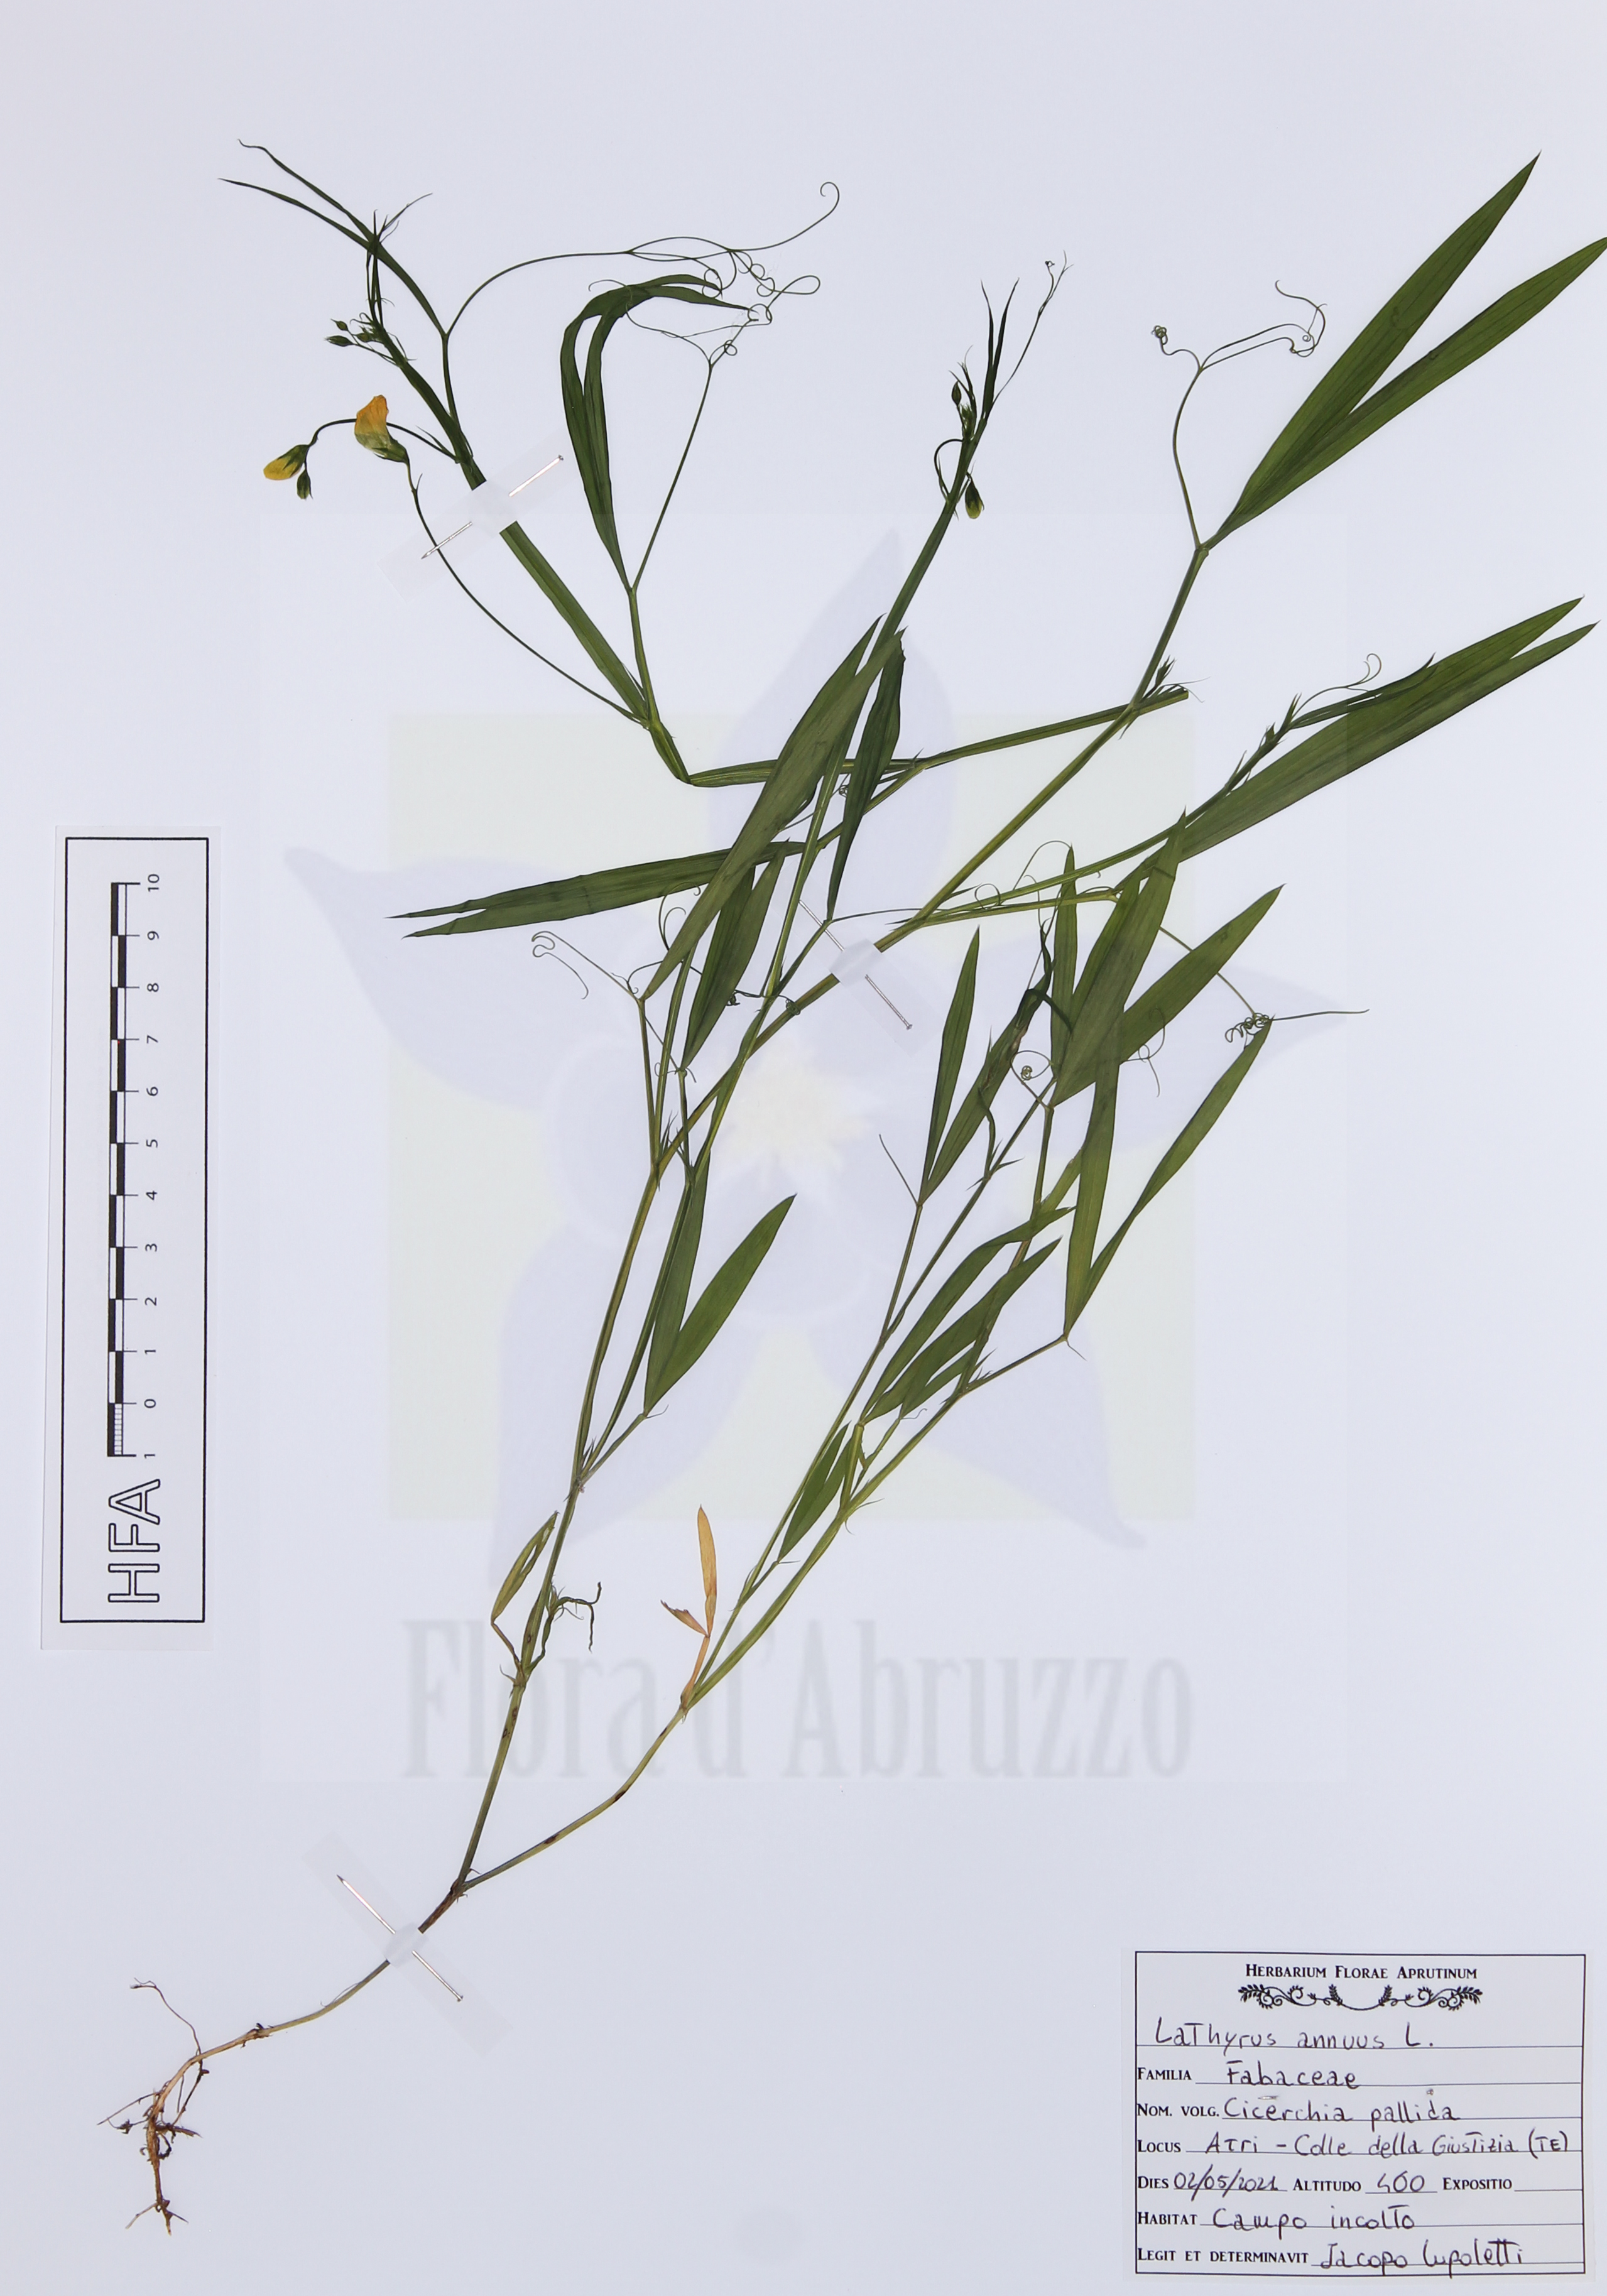 Lathyrus annuus L.